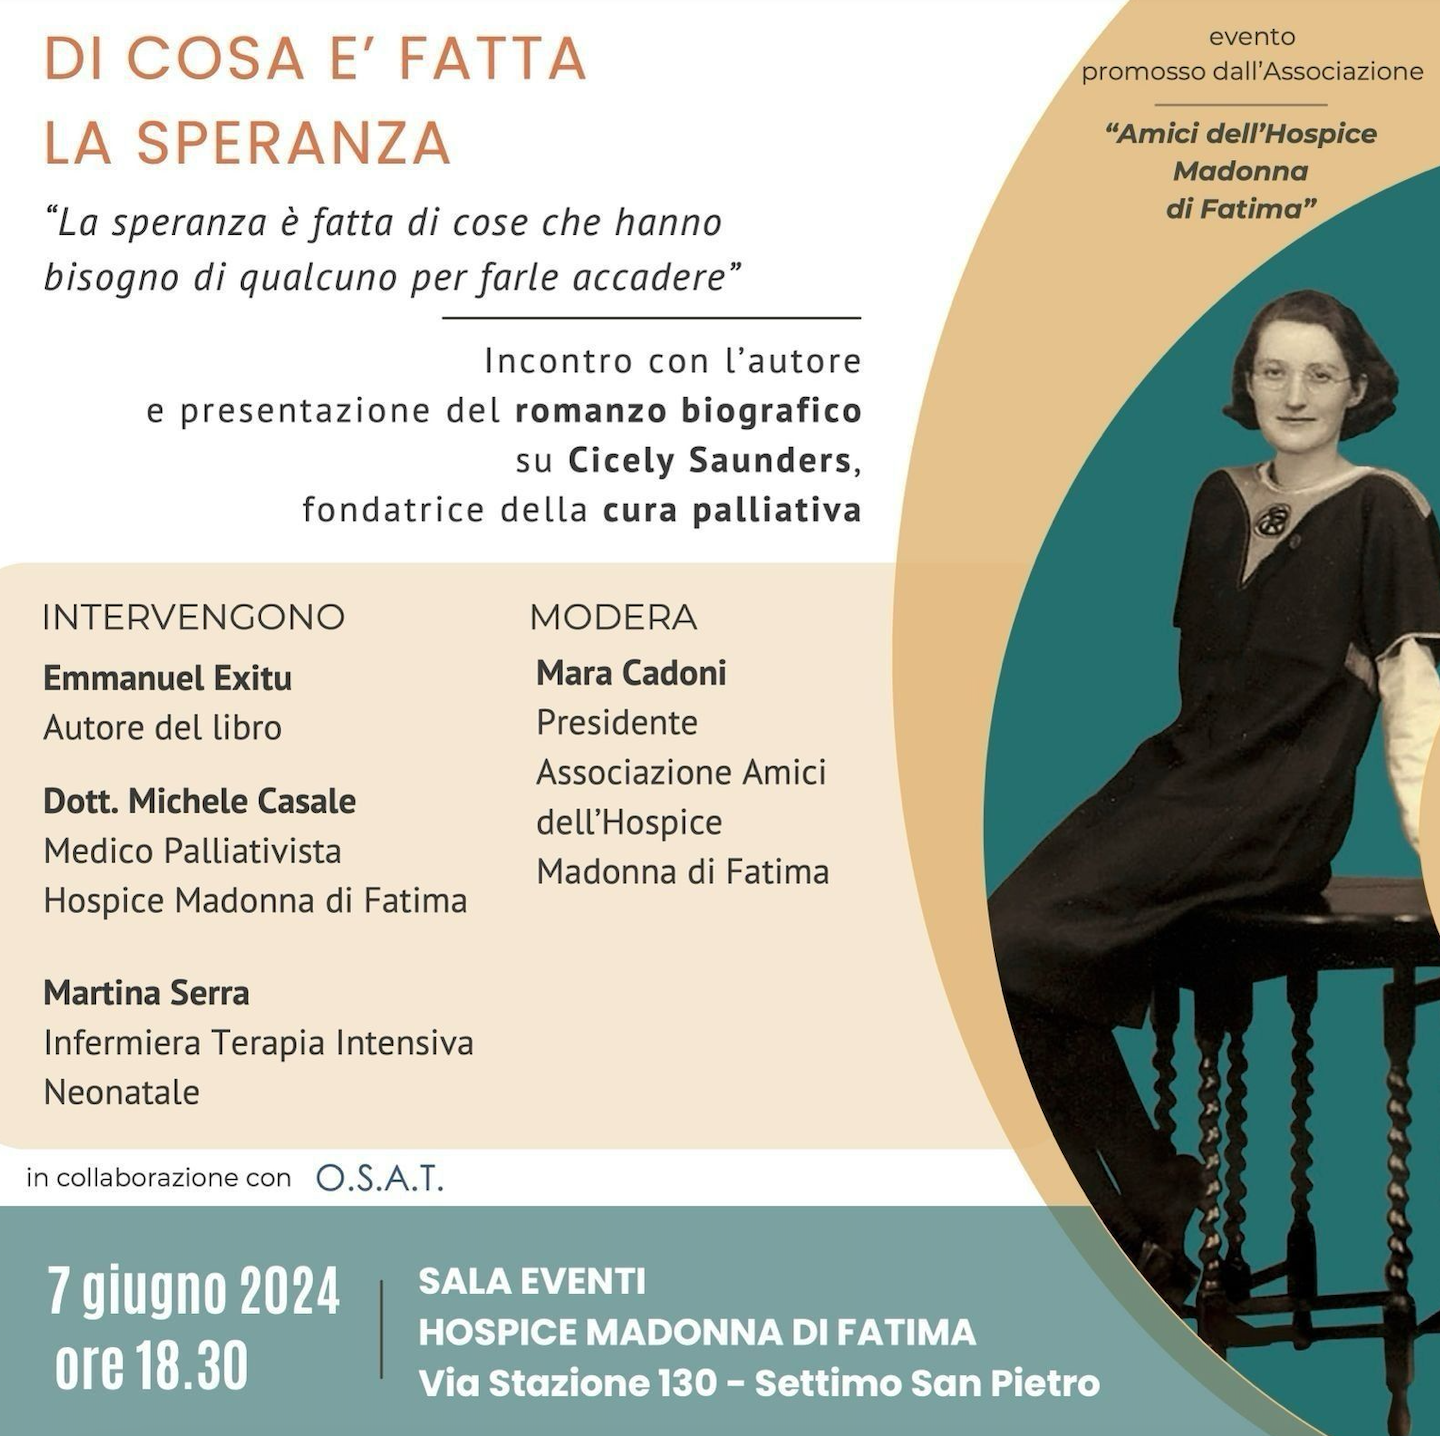 Featured image for “Cagliari: Di cosa è fatta la speranza, Cicely Saunders”